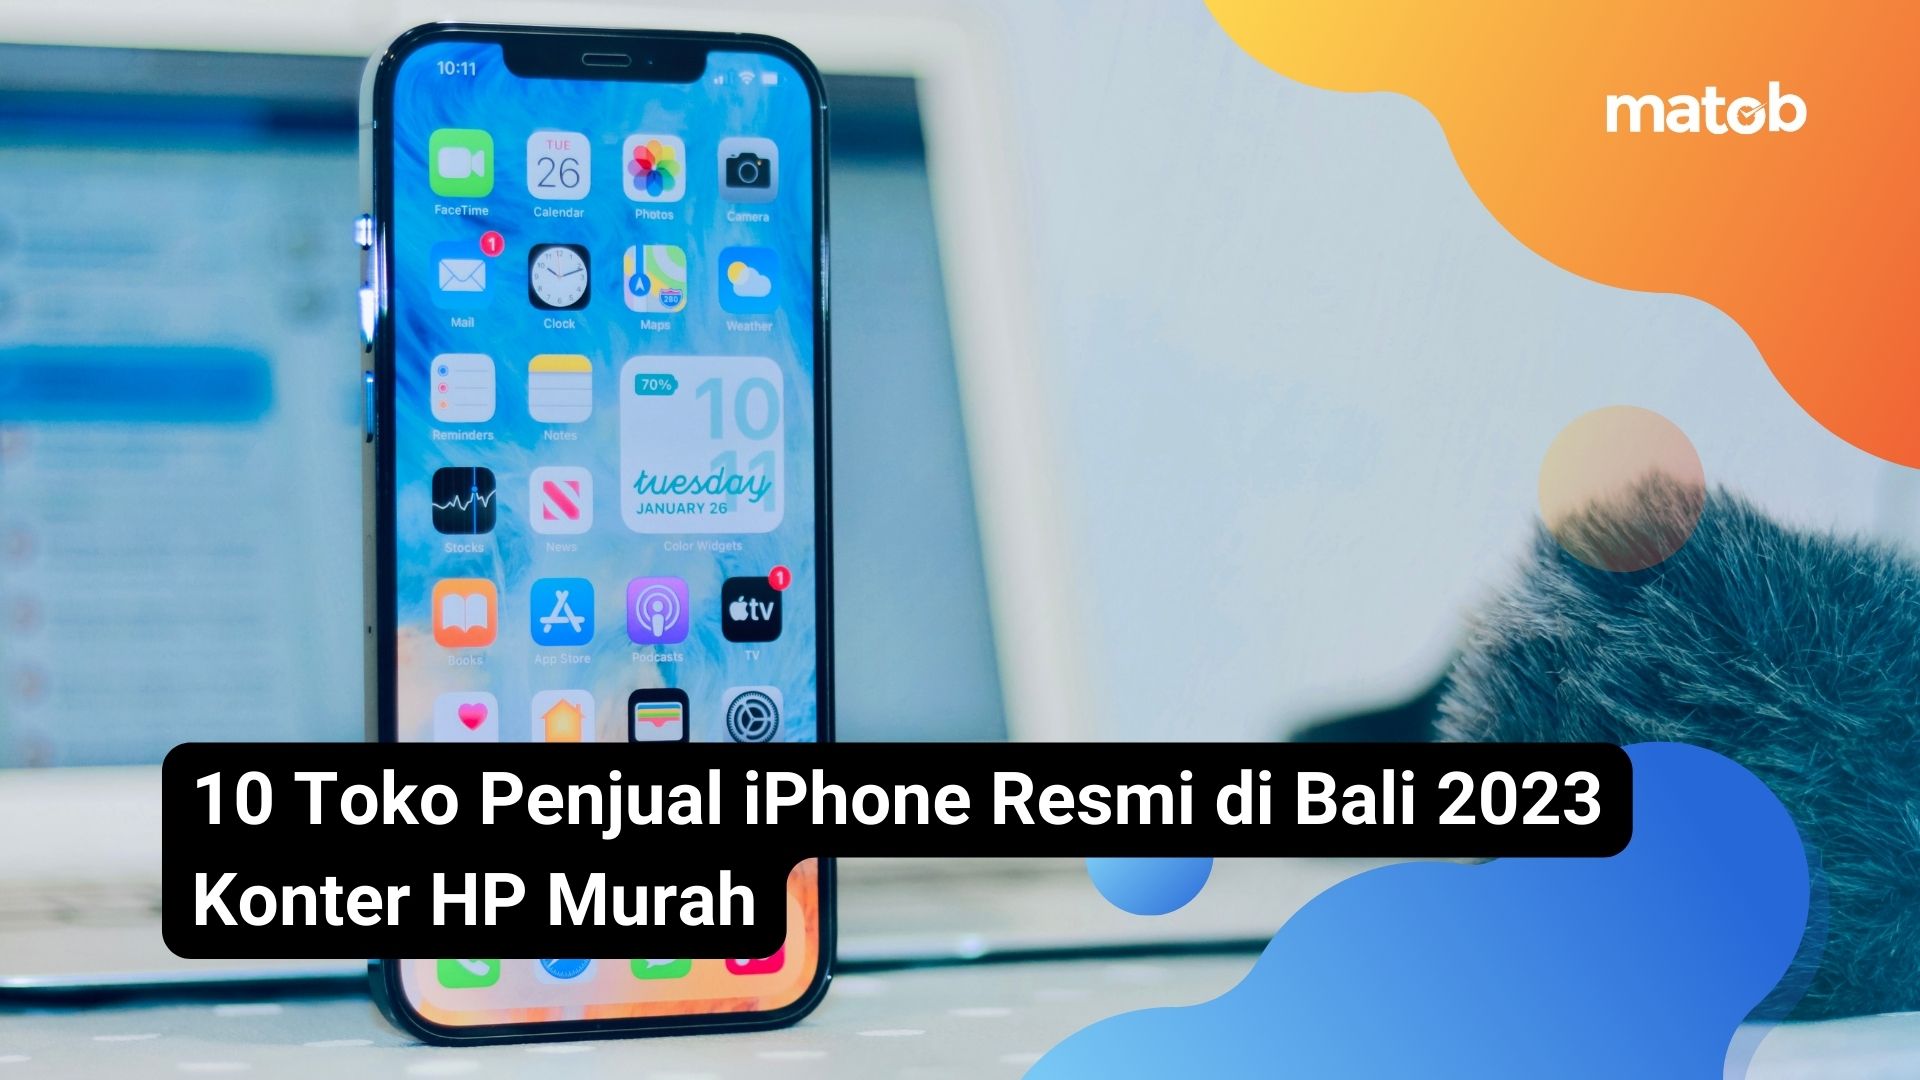 10 Toko Penjual iPhone Resmi di Bali 2023 Konter HP Murah